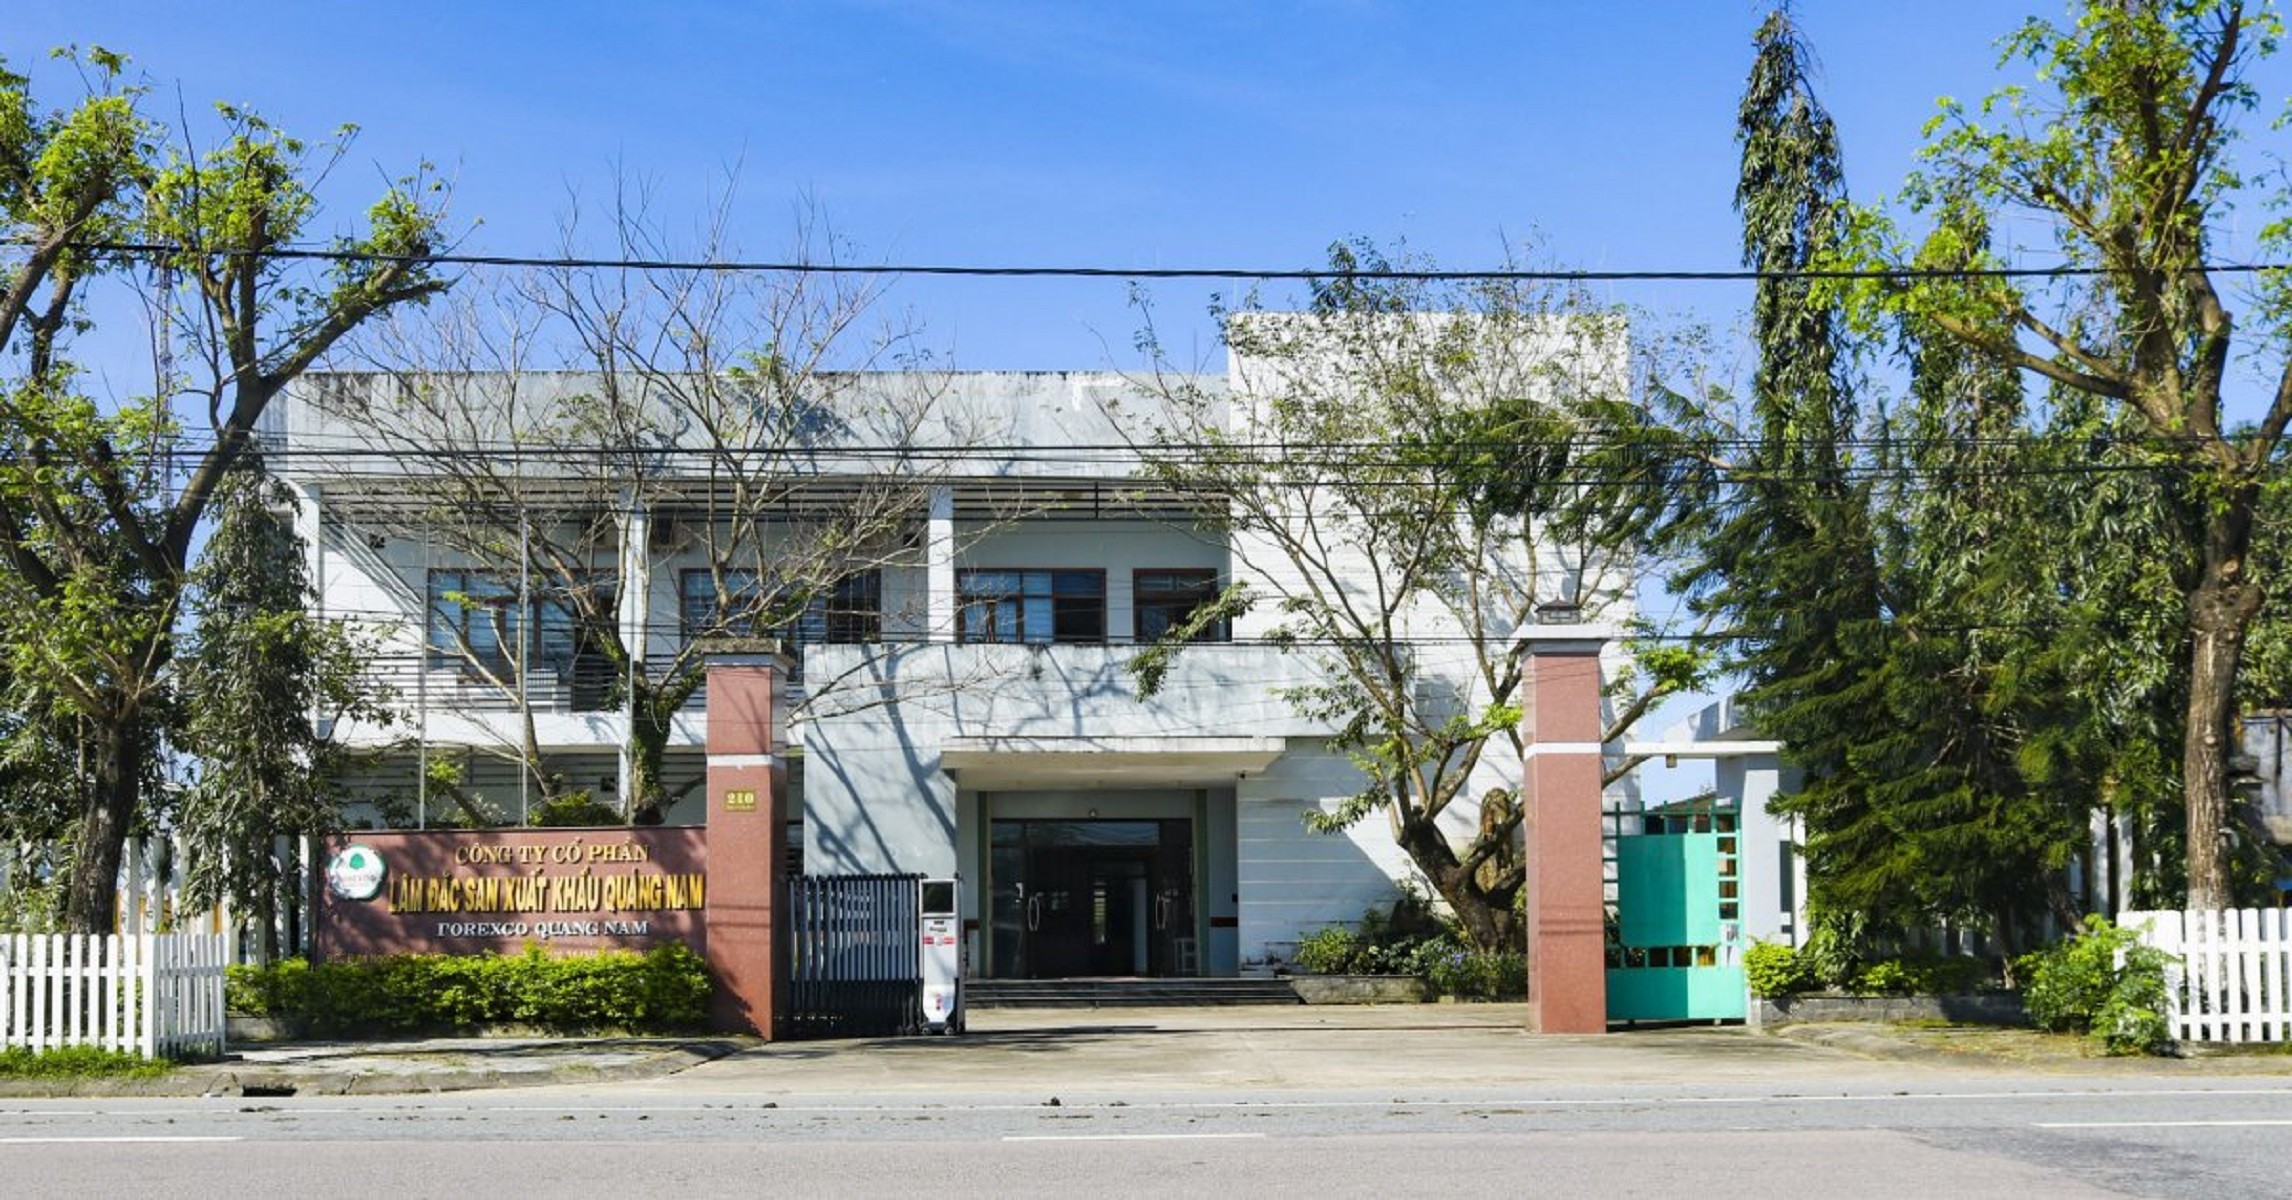 

Công ty cổ phần Lâm đặc sản Xuất khẩu Quảng Nam (Forexco – FRC) tiền thân là Xí nghiệp liên hiệp Lâm đặc sản Xuất khẩu Quảng Nam Đà Nẵng được thành lập vào ngày 29/11/1986
